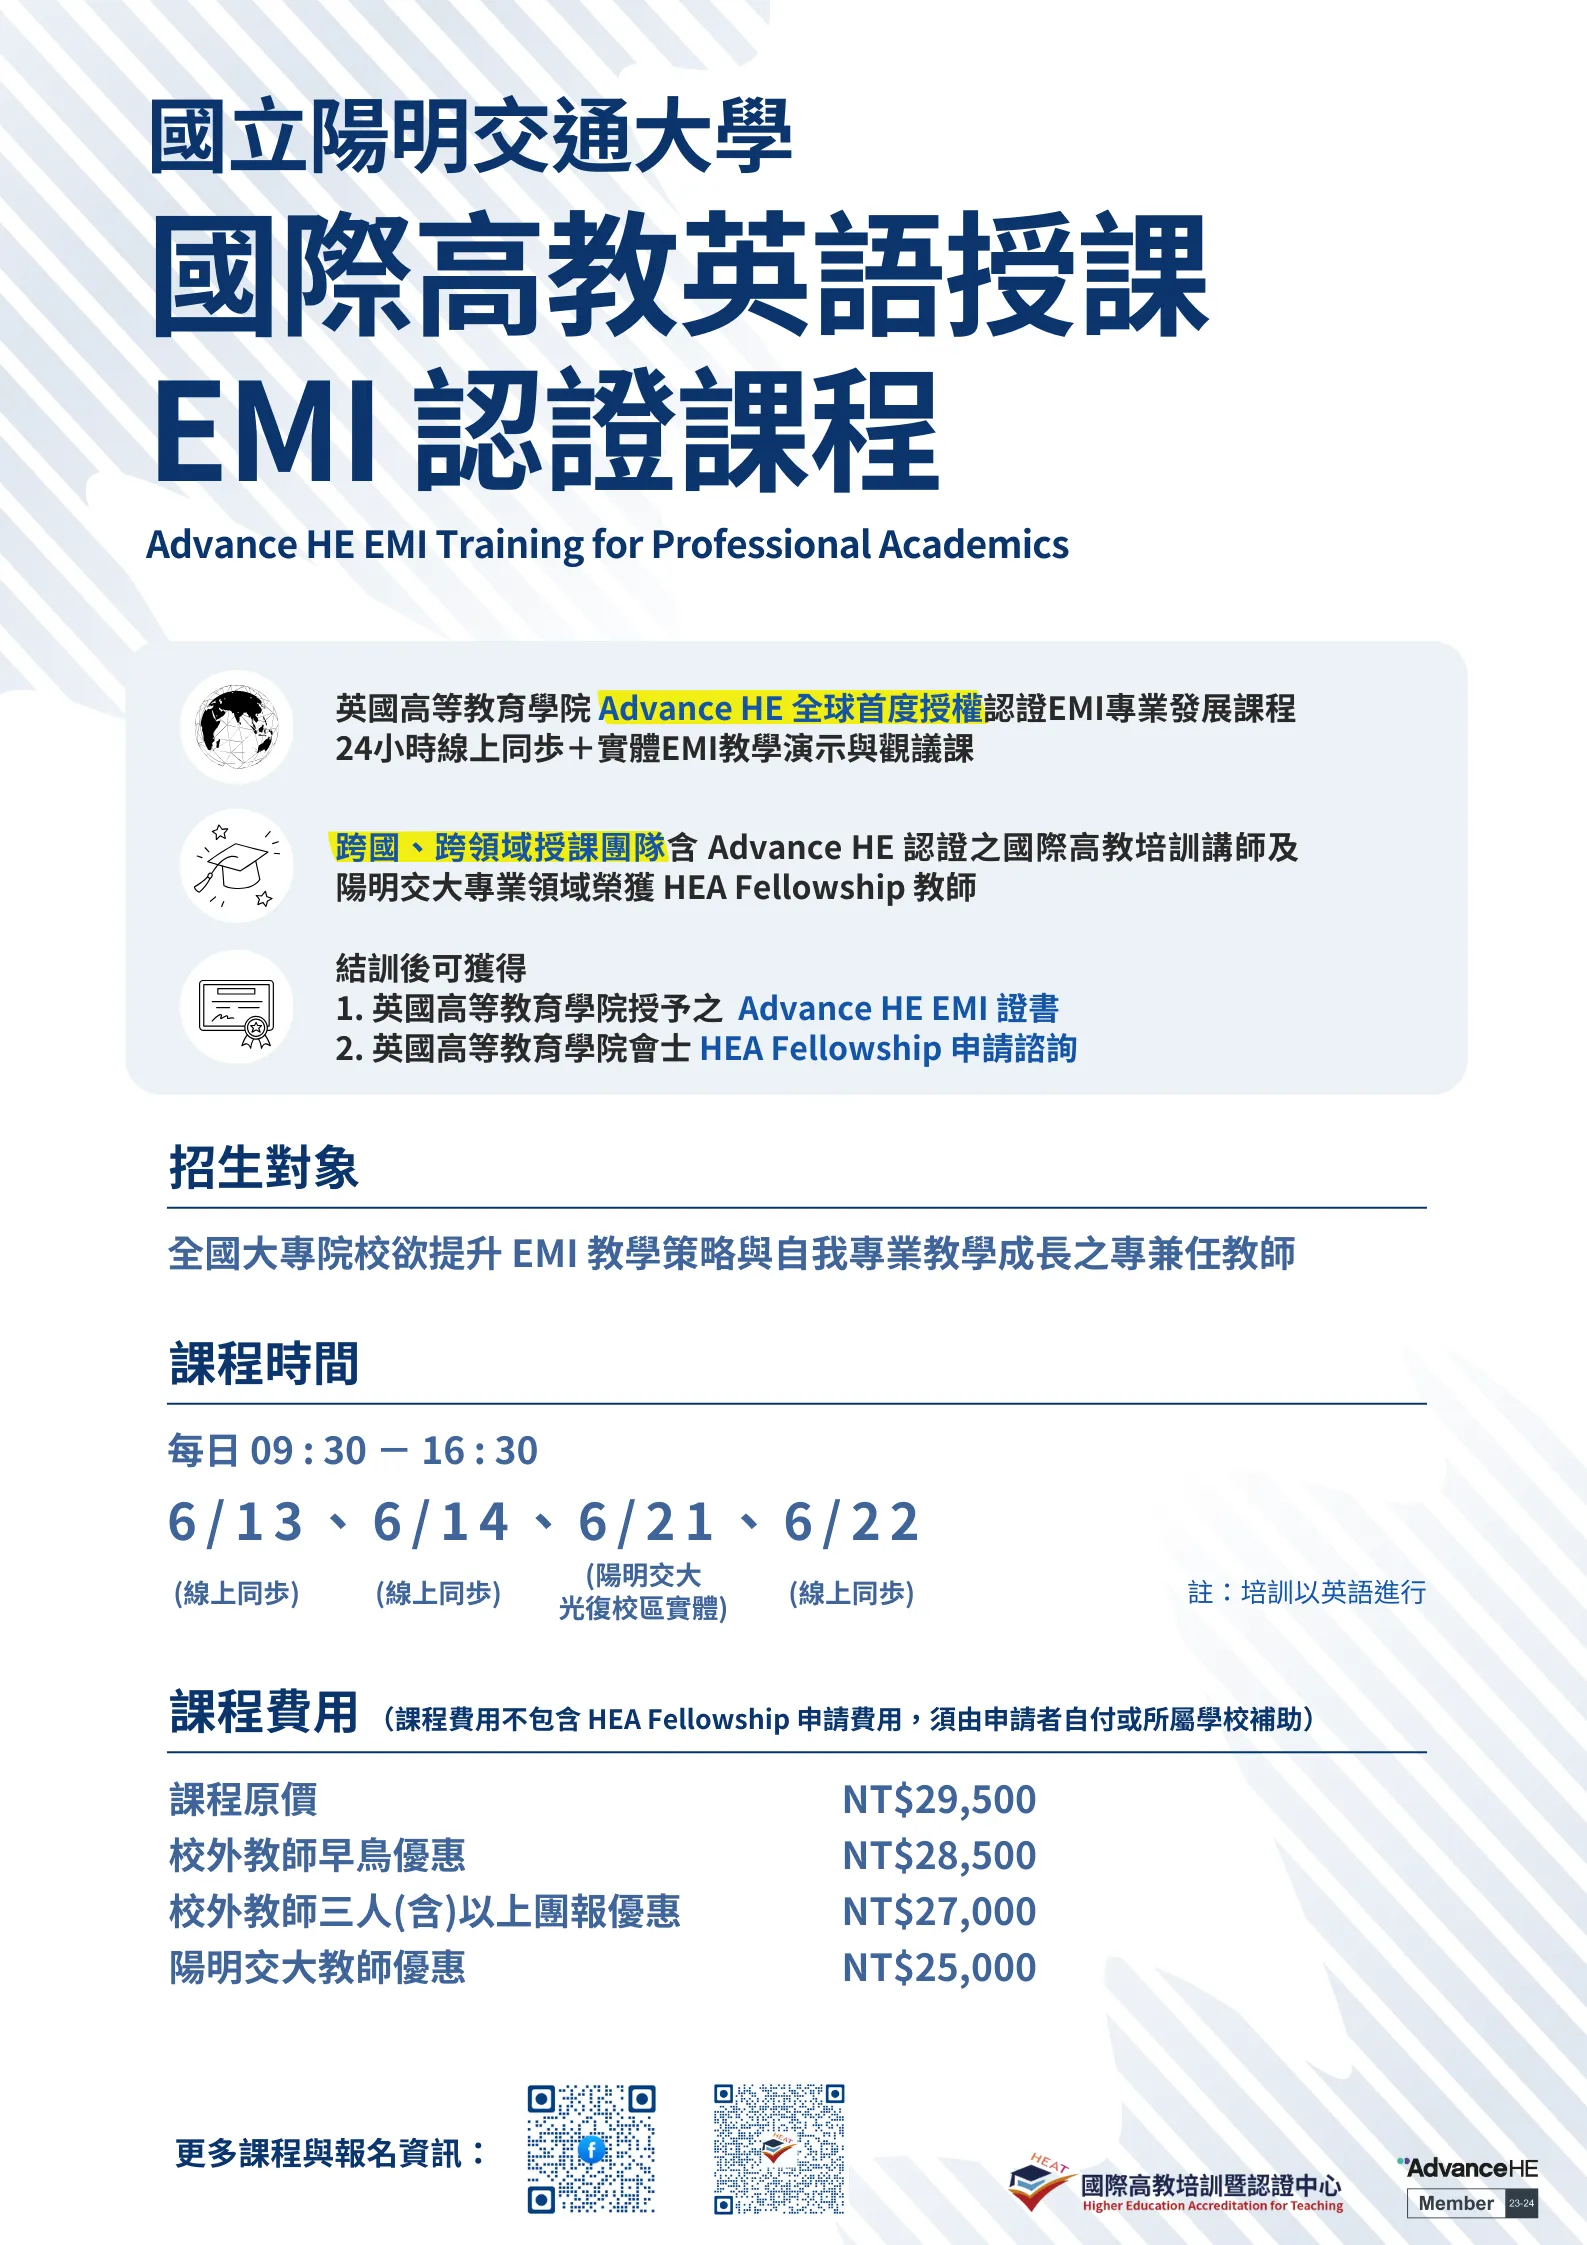 國際高教英語授課 EMI 課程計畫